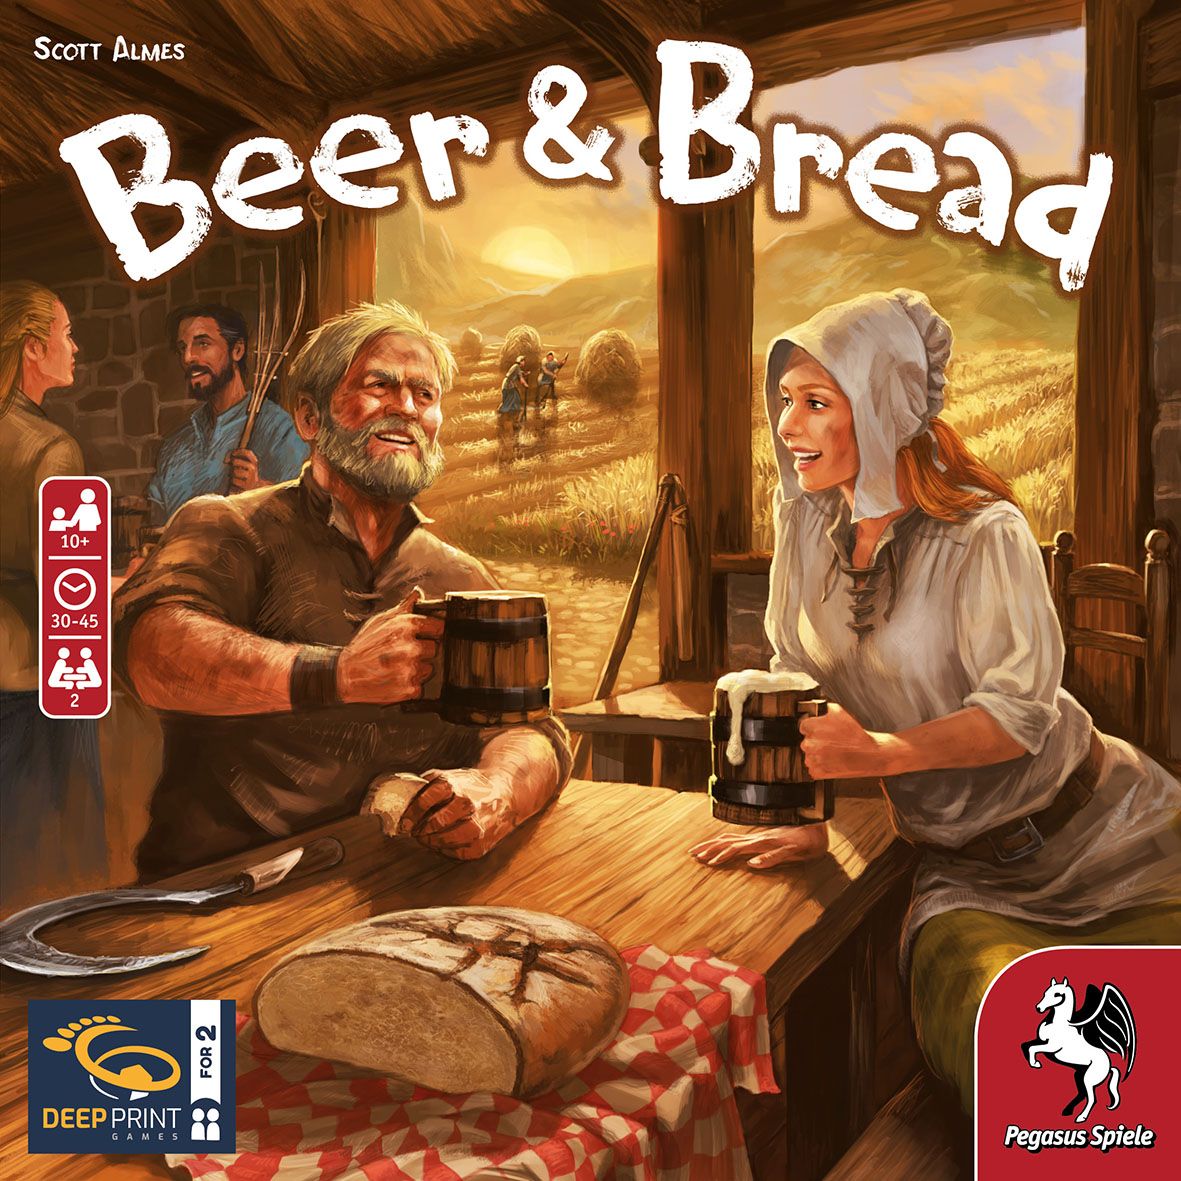 Beer & Bread - Deep Print Games